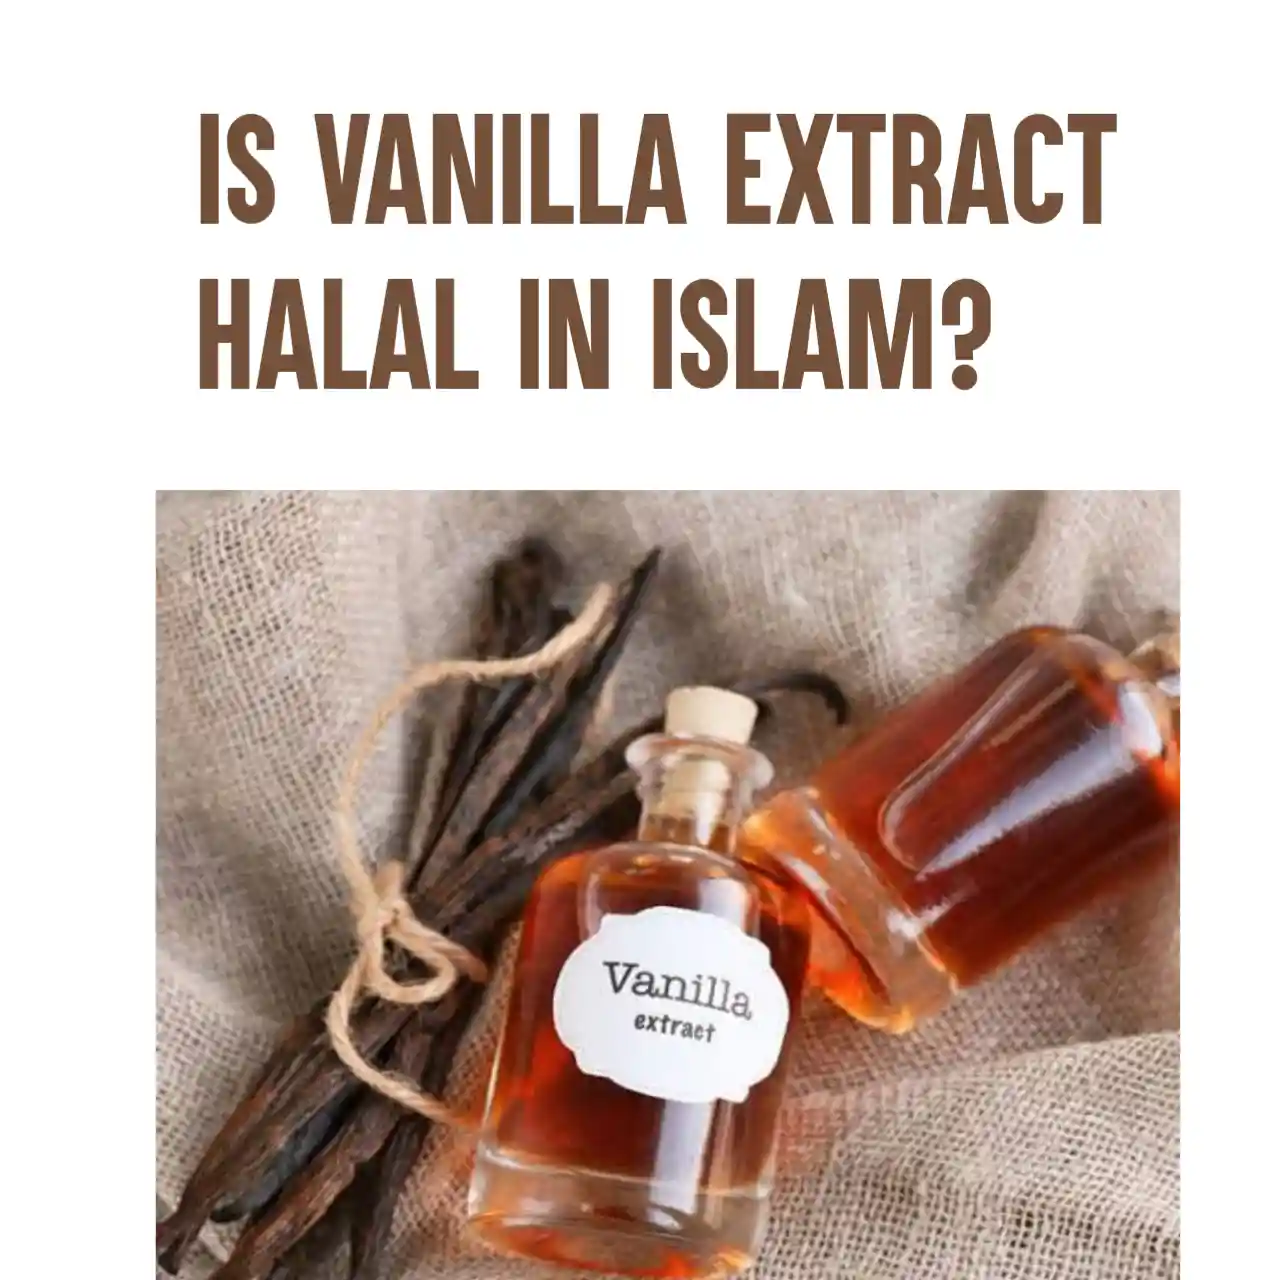 Is vanilla extract halal